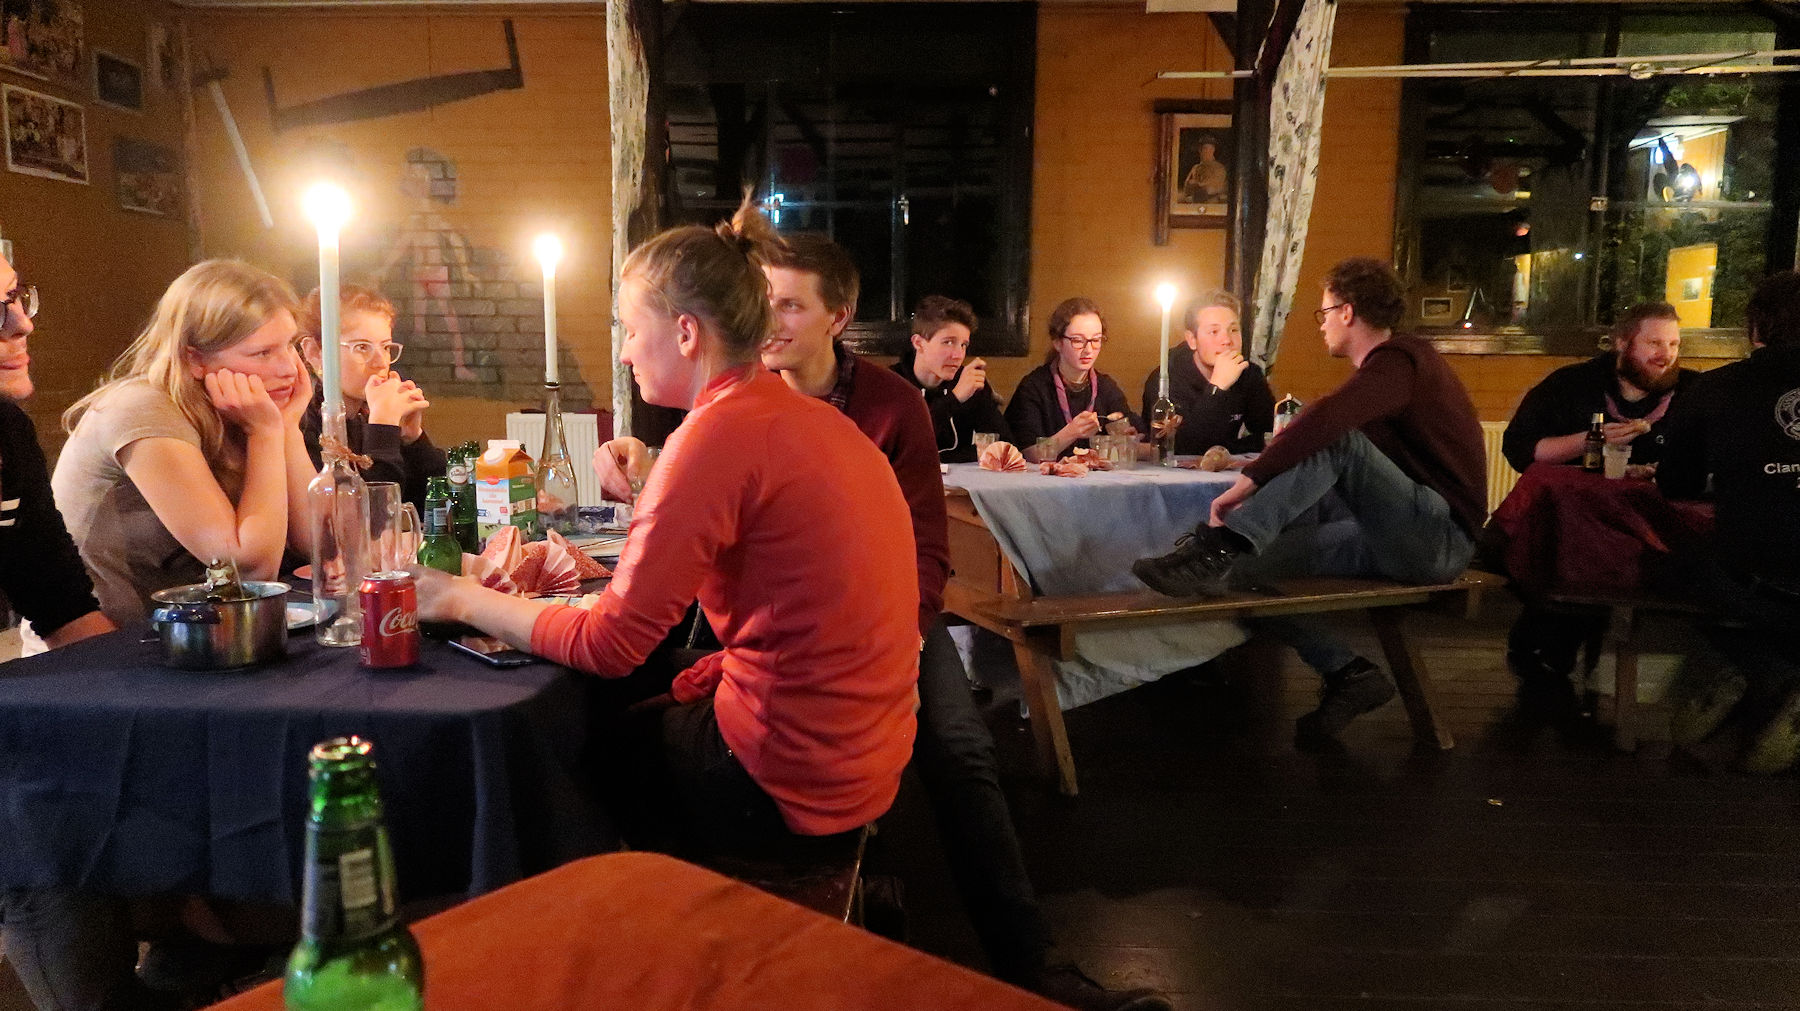 Het zaterdagavond diner: de scouts hadden een uitstékende en gevarieerde maaltijd bereid! Petje af...